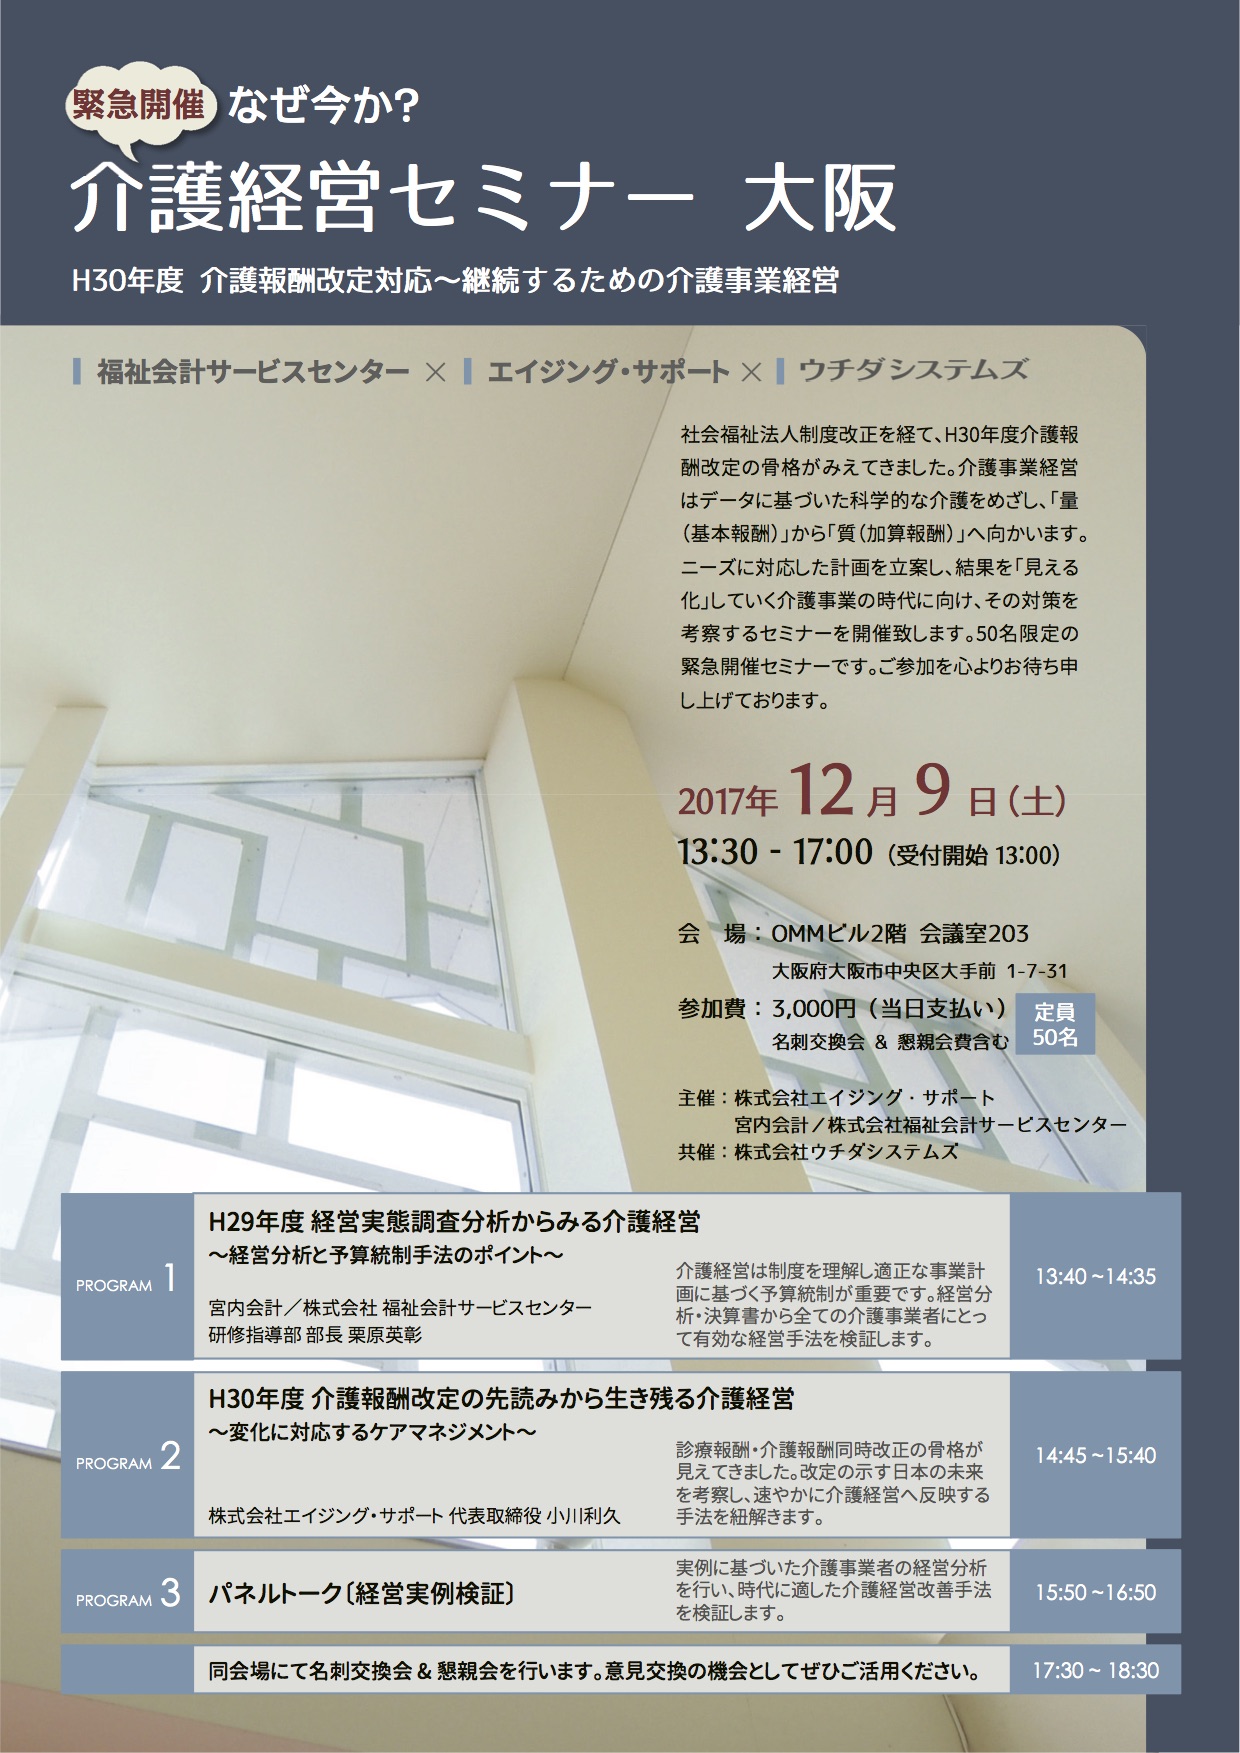 経営目的と経営指標から／12月9日「介護経営セミナー in 大阪」の再案内